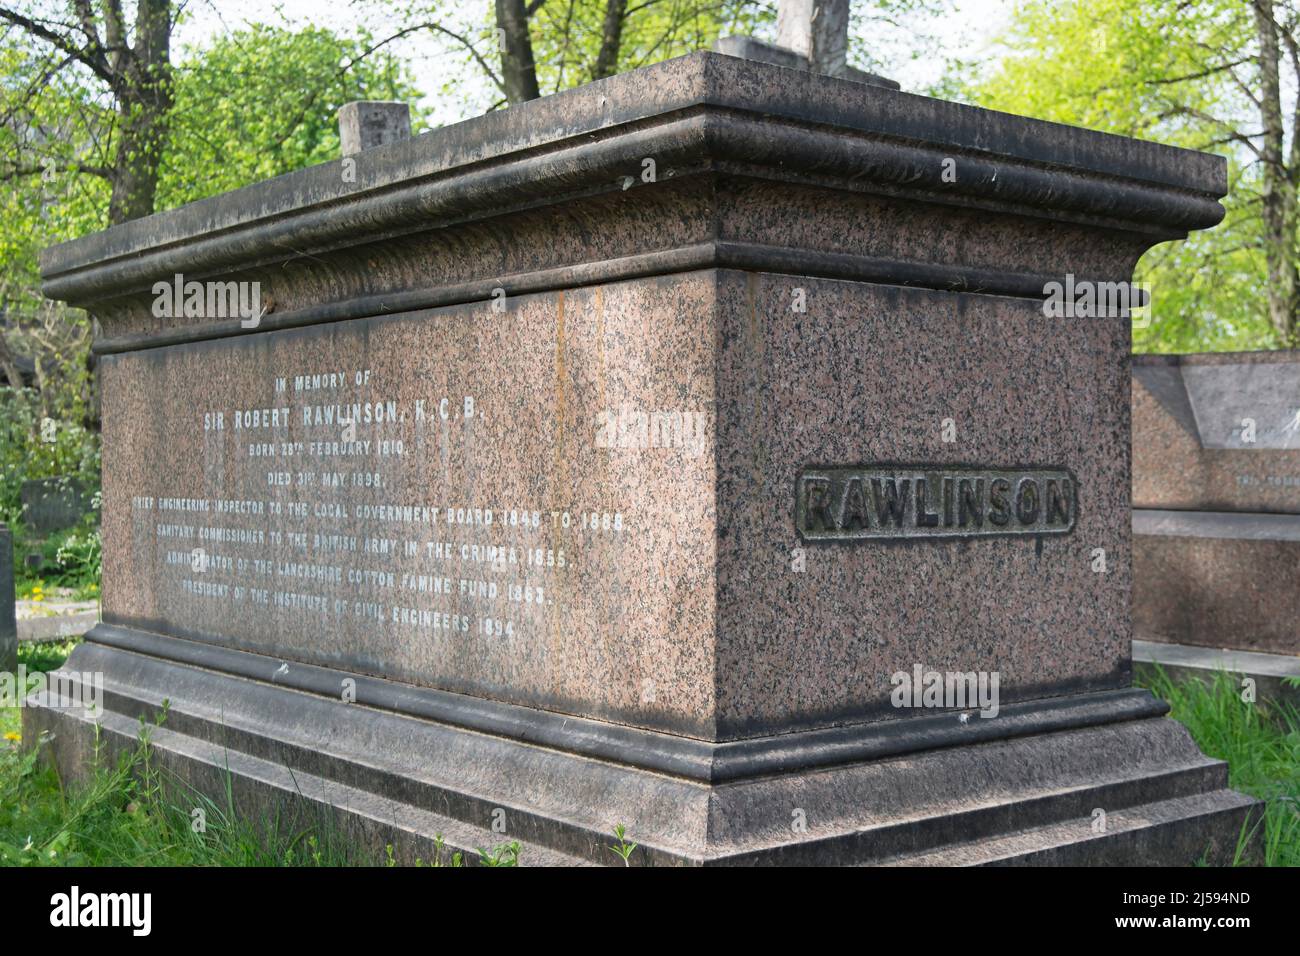 Das Grab von Robert rawlinson, Ingenieur und Sanitäter des 19.. Jahrhunderts, auf dem brompton Friedhof, london, england Stockfoto